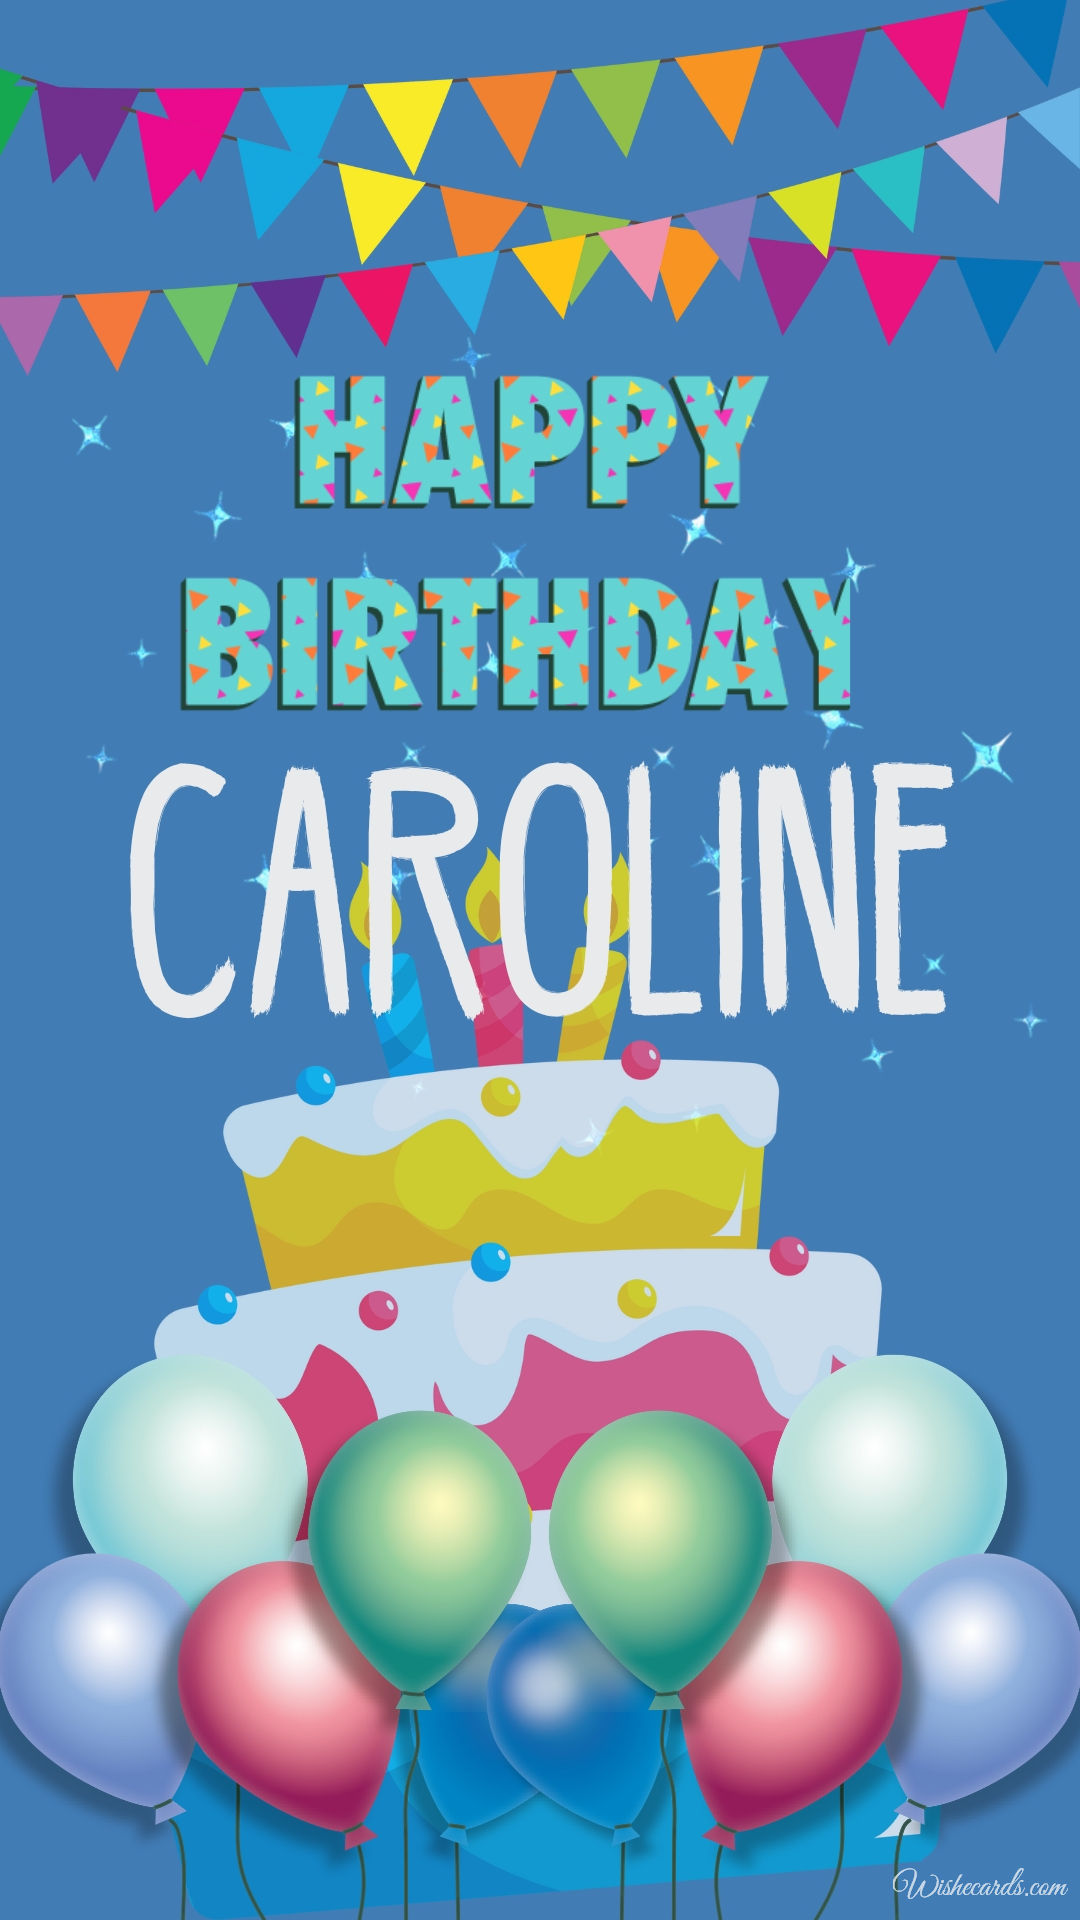 Happy Birthday to Caroline